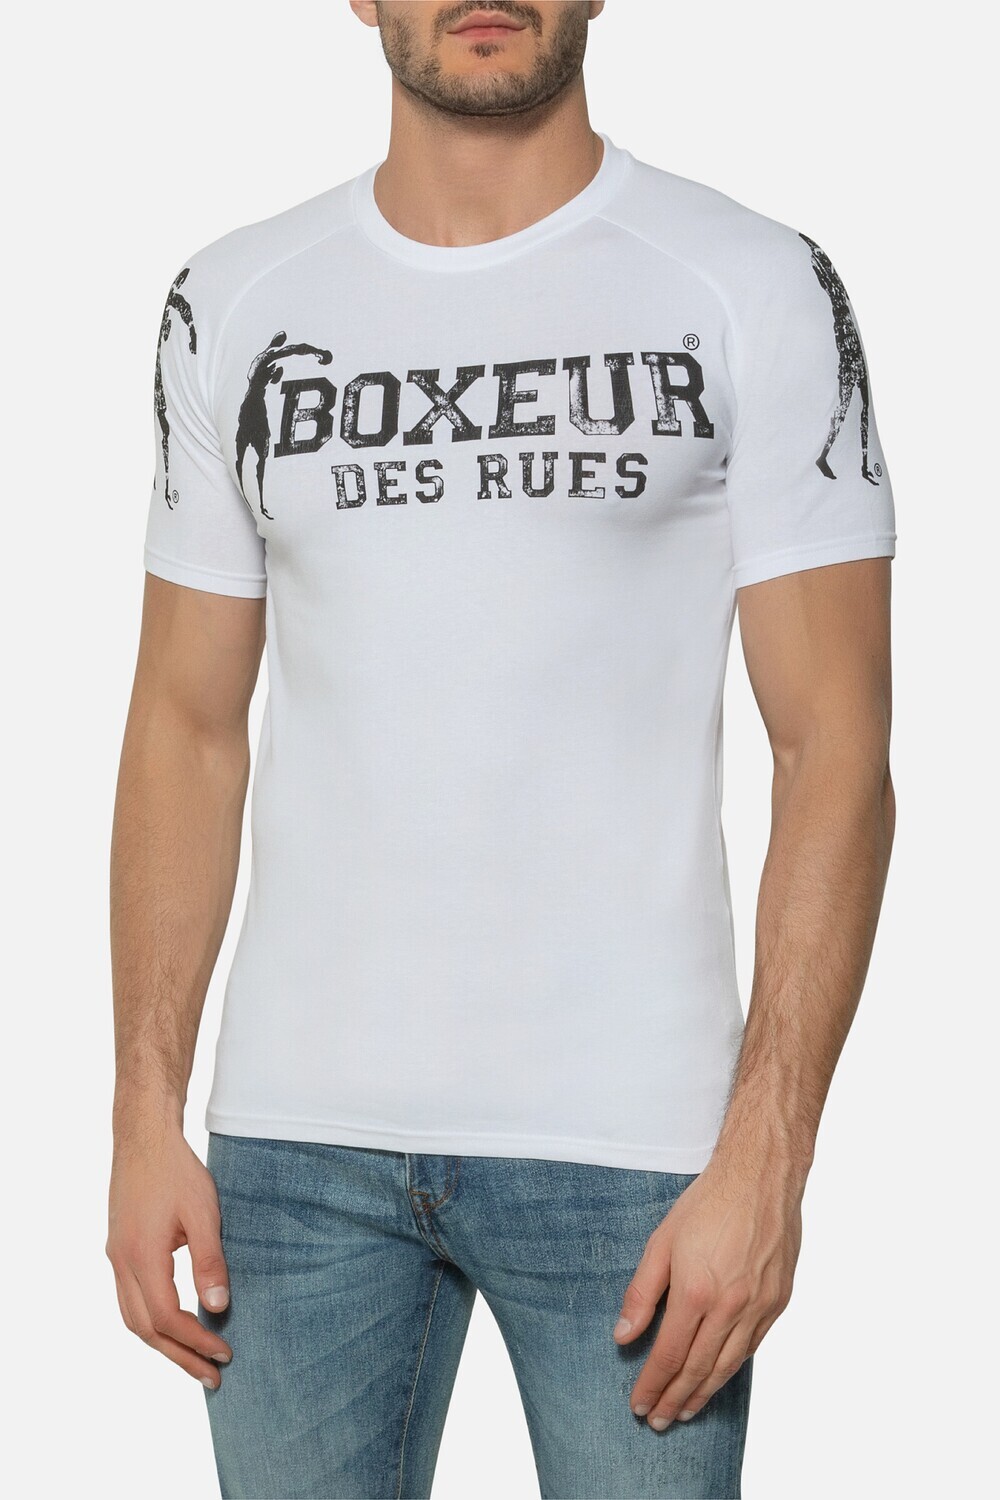 Футболка "Boxeur", Raglan T-shirt, White, Boxeur Des Rues